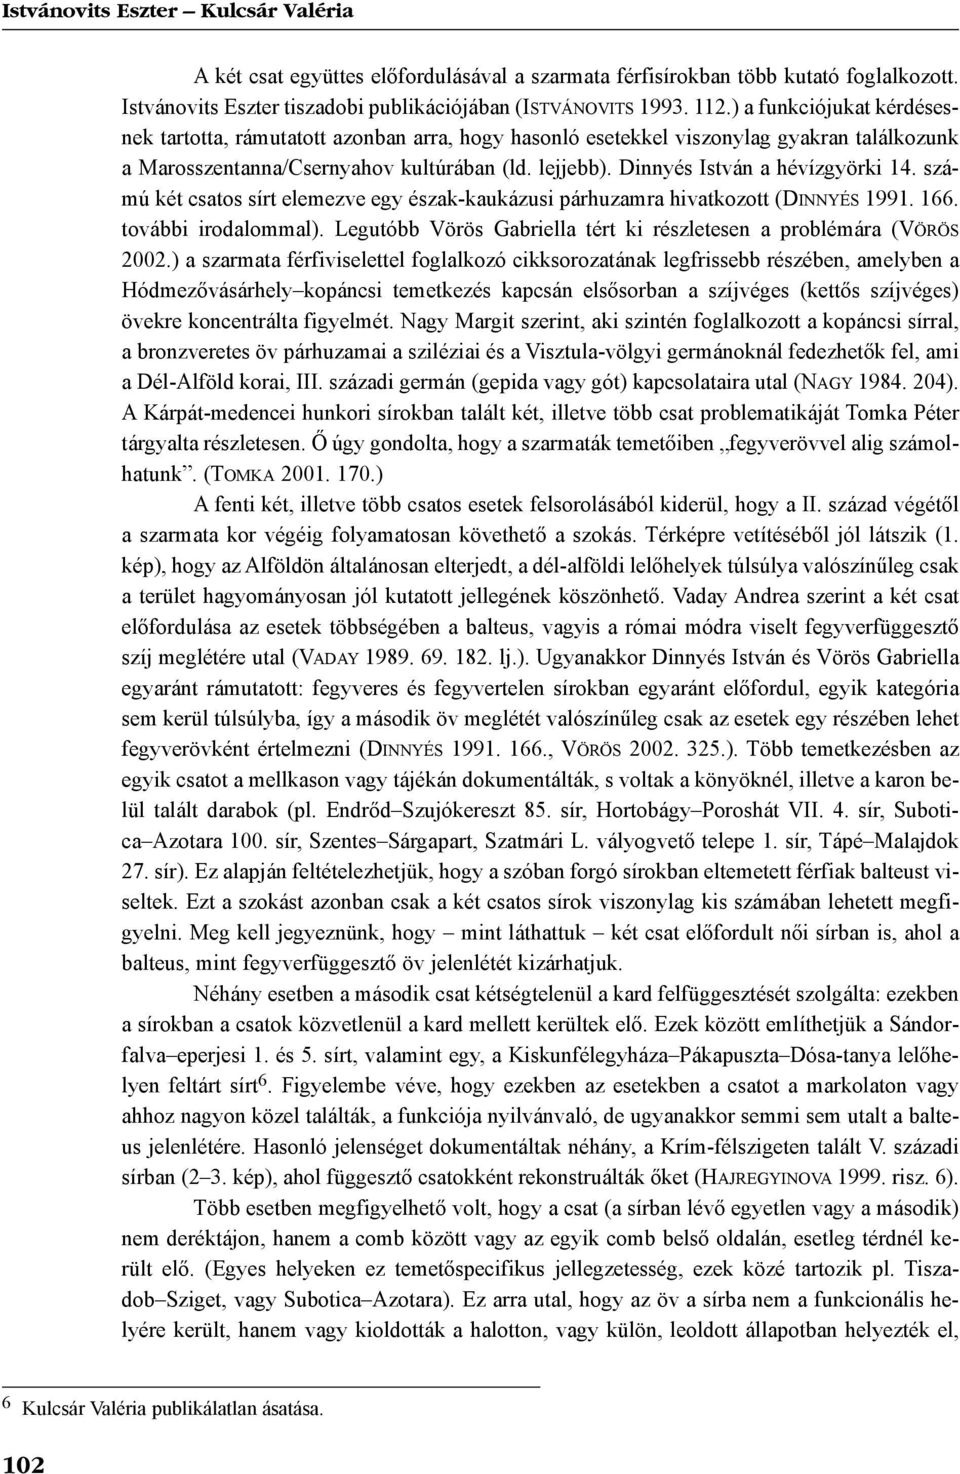 Dinnyés István a hévízgyörki 14. számú két csatos sírt elemezve egy észak-kaukázusi párhuzamra hivatkozott (DINNYÉS 1991. 166. további irodalommal).